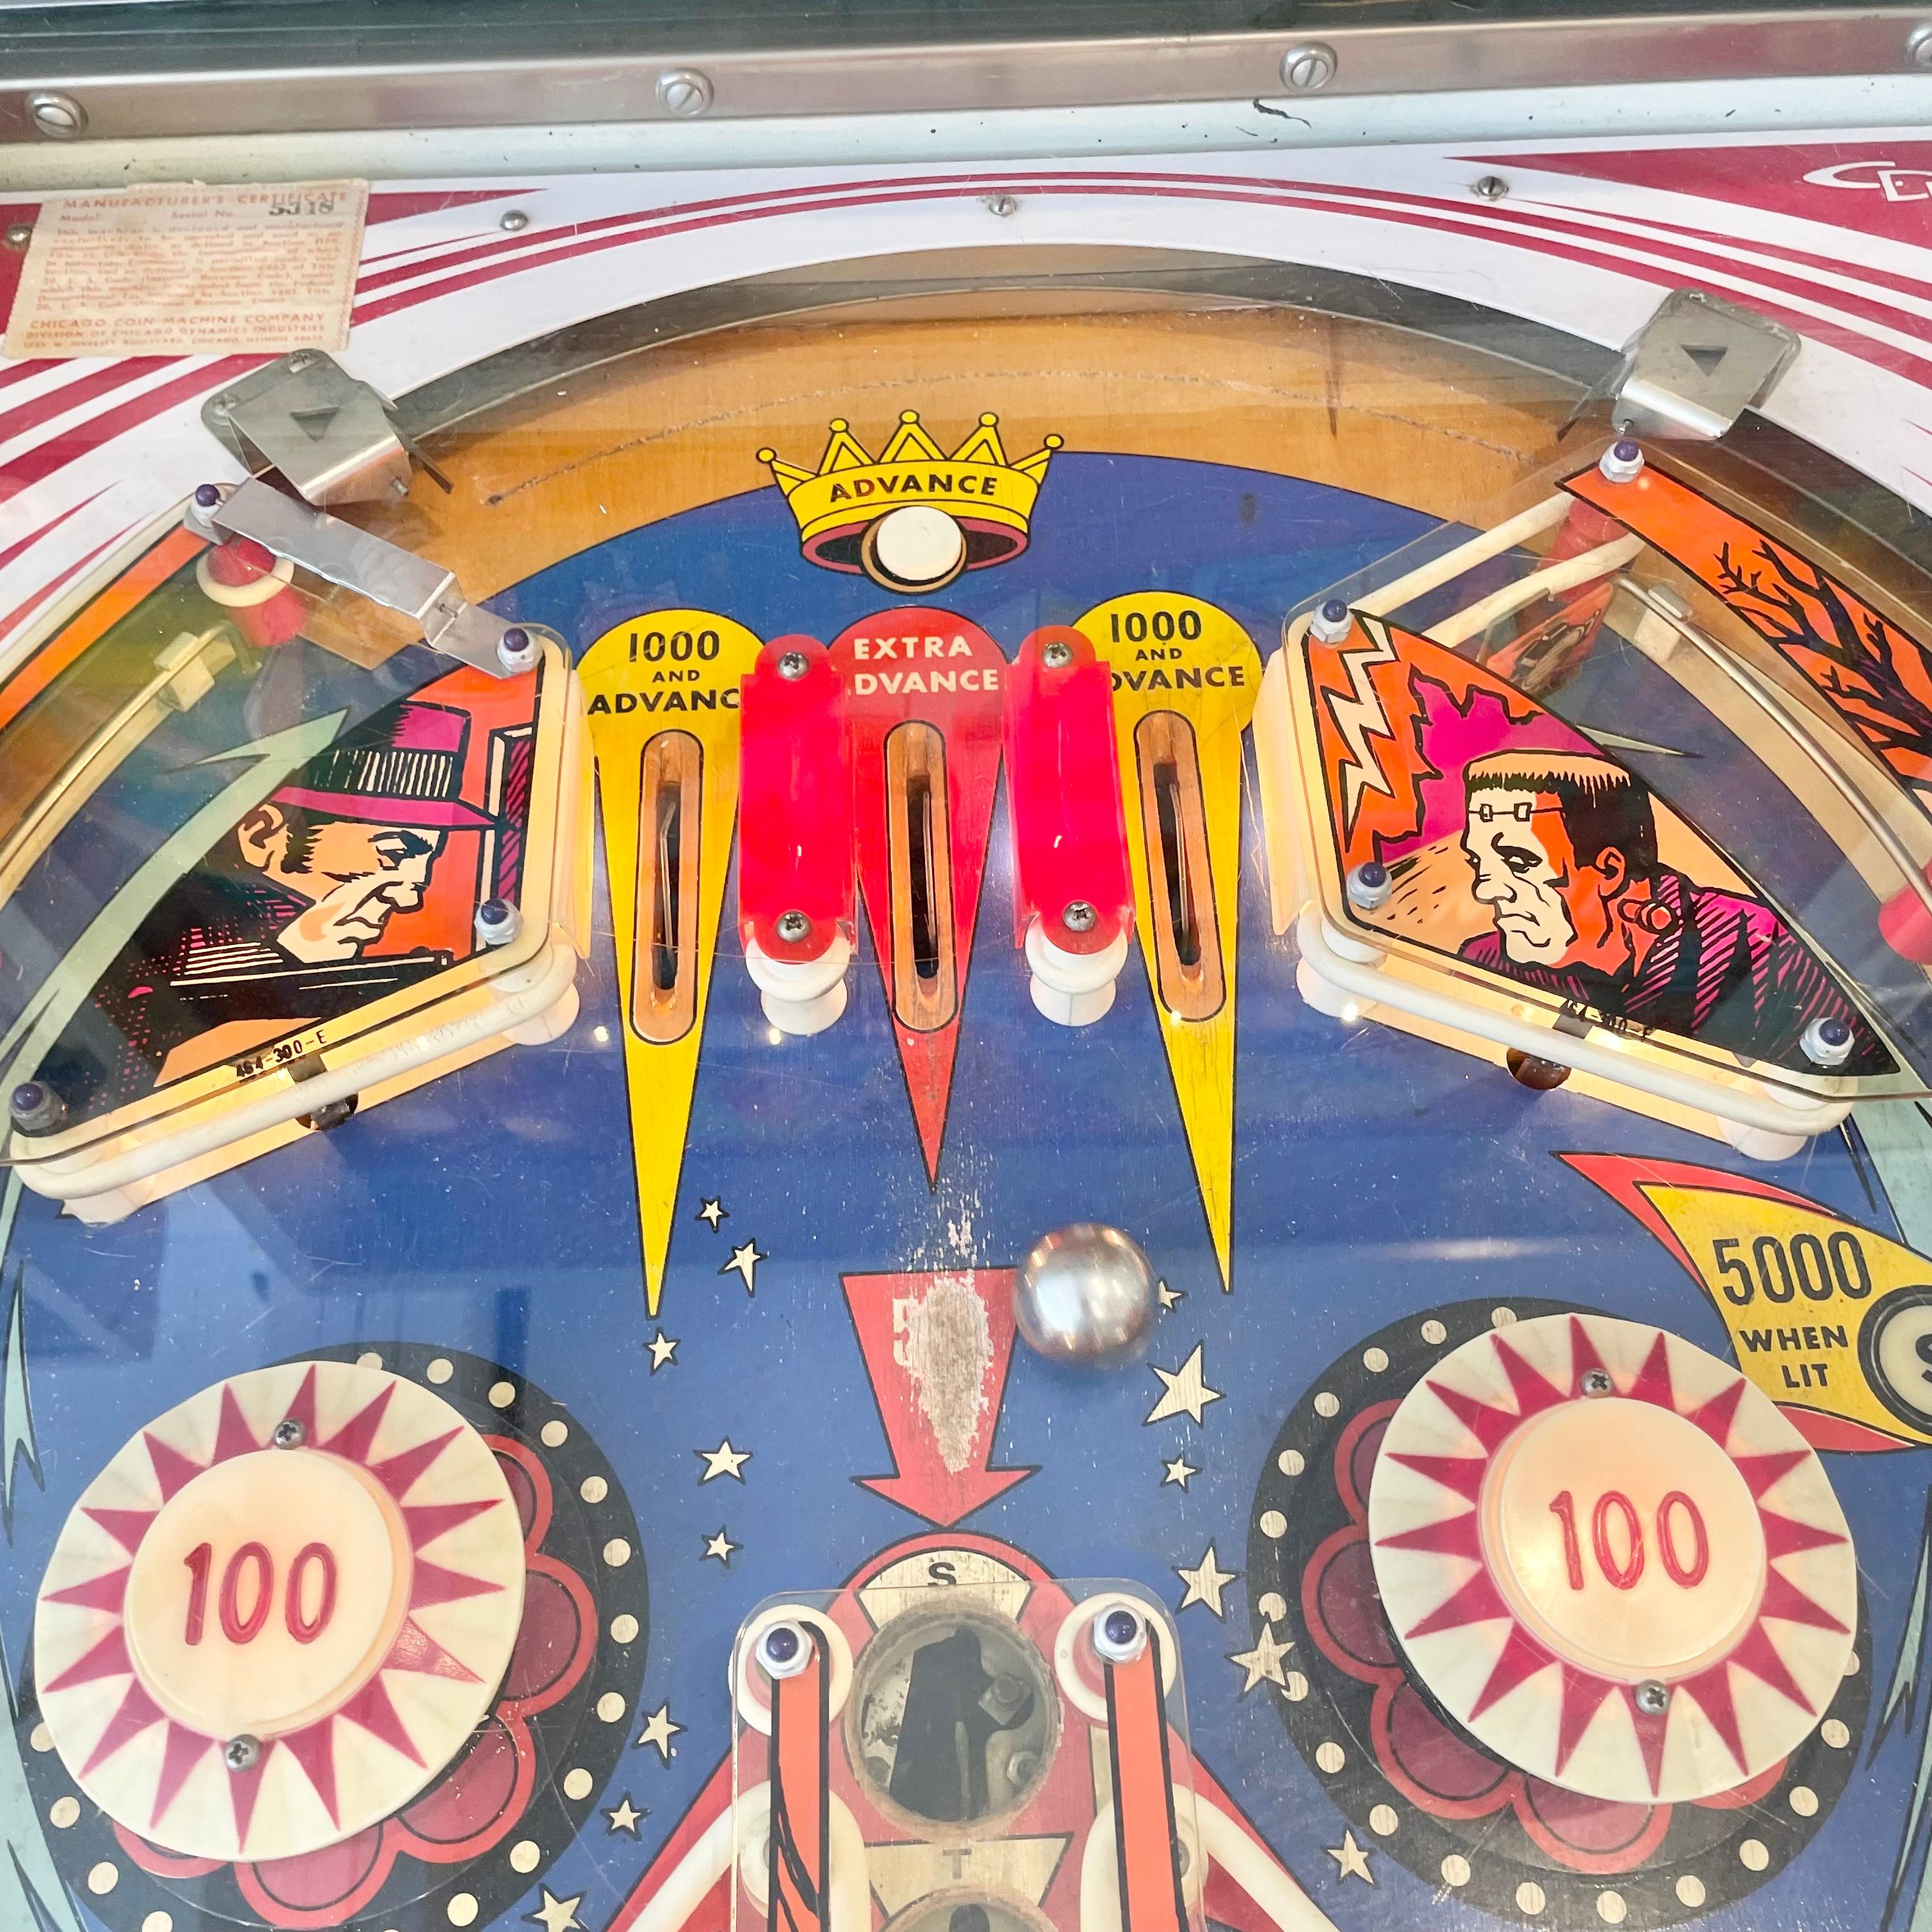 Hollywood Pinball Arcade Game, 1976 USA For Sale 7